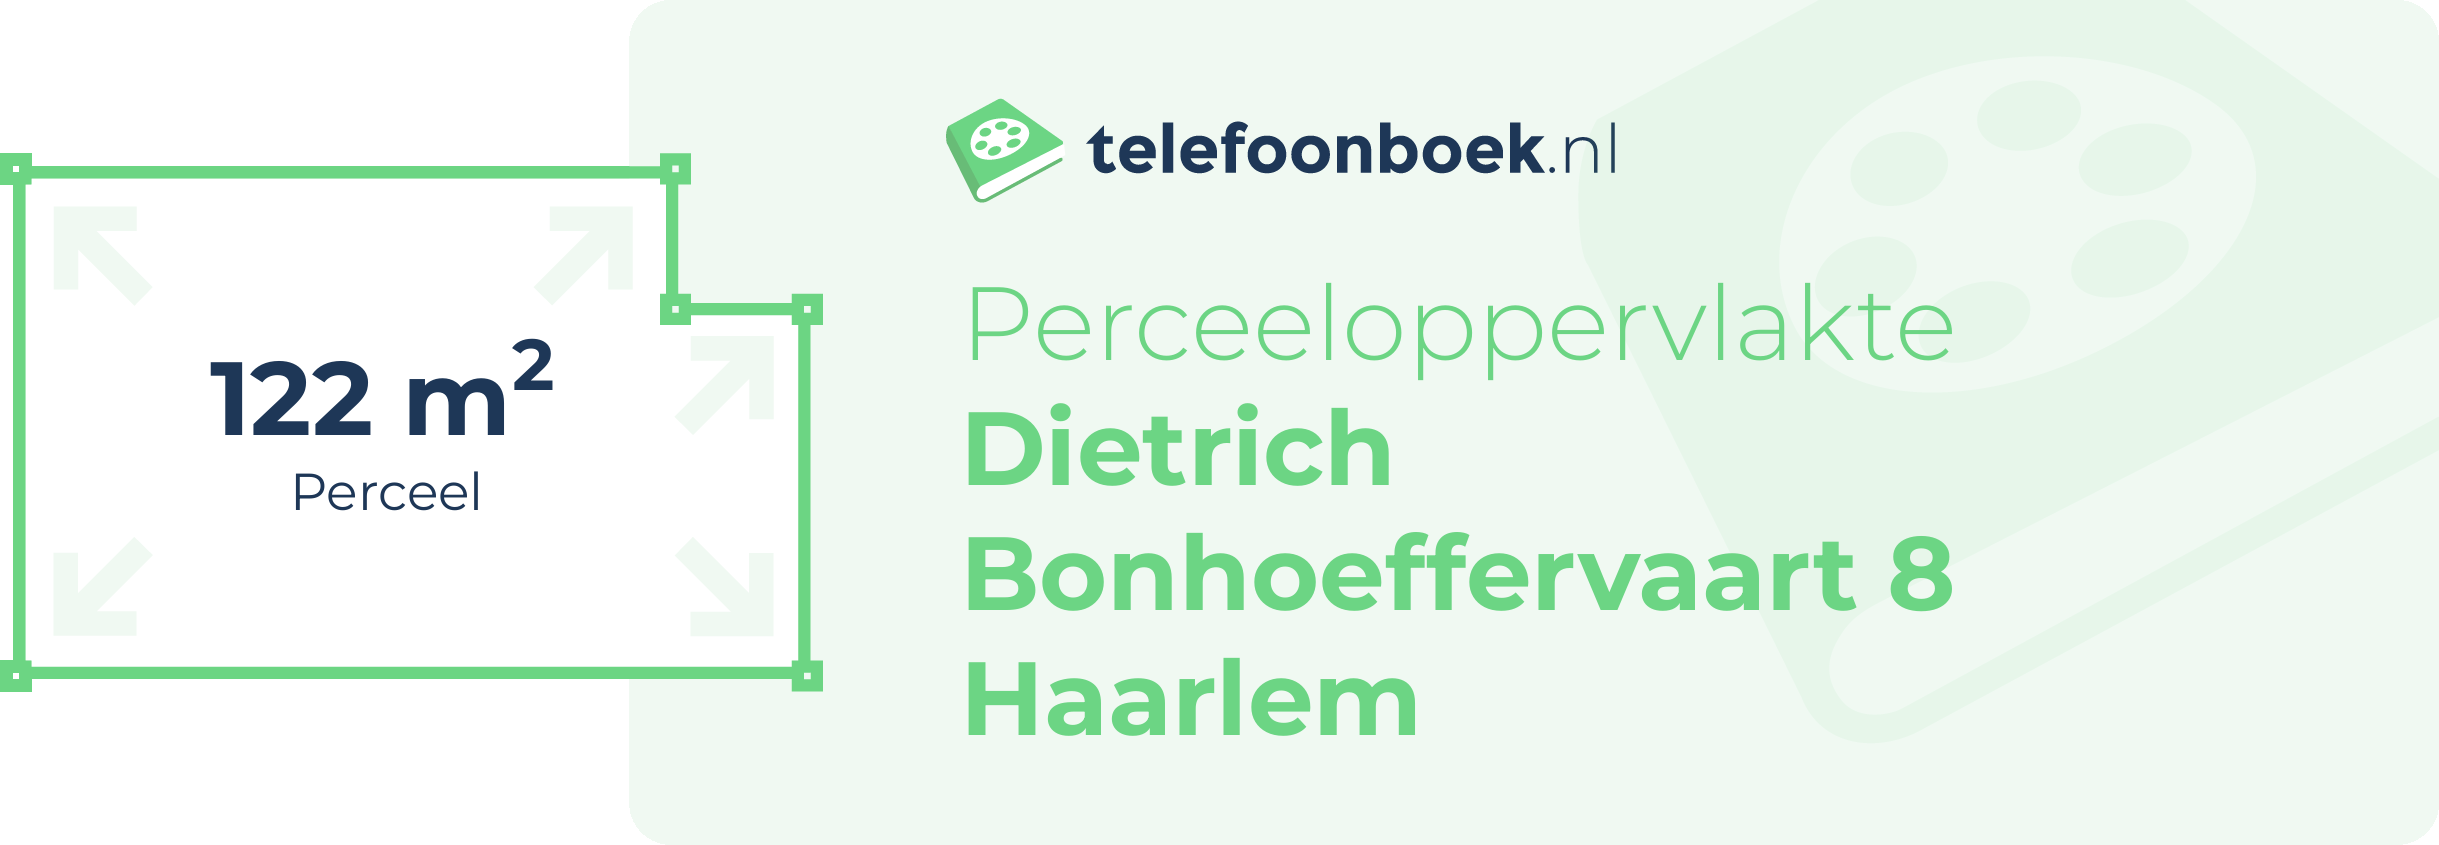 Perceeloppervlakte Dietrich Bonhoeffervaart 8 Haarlem